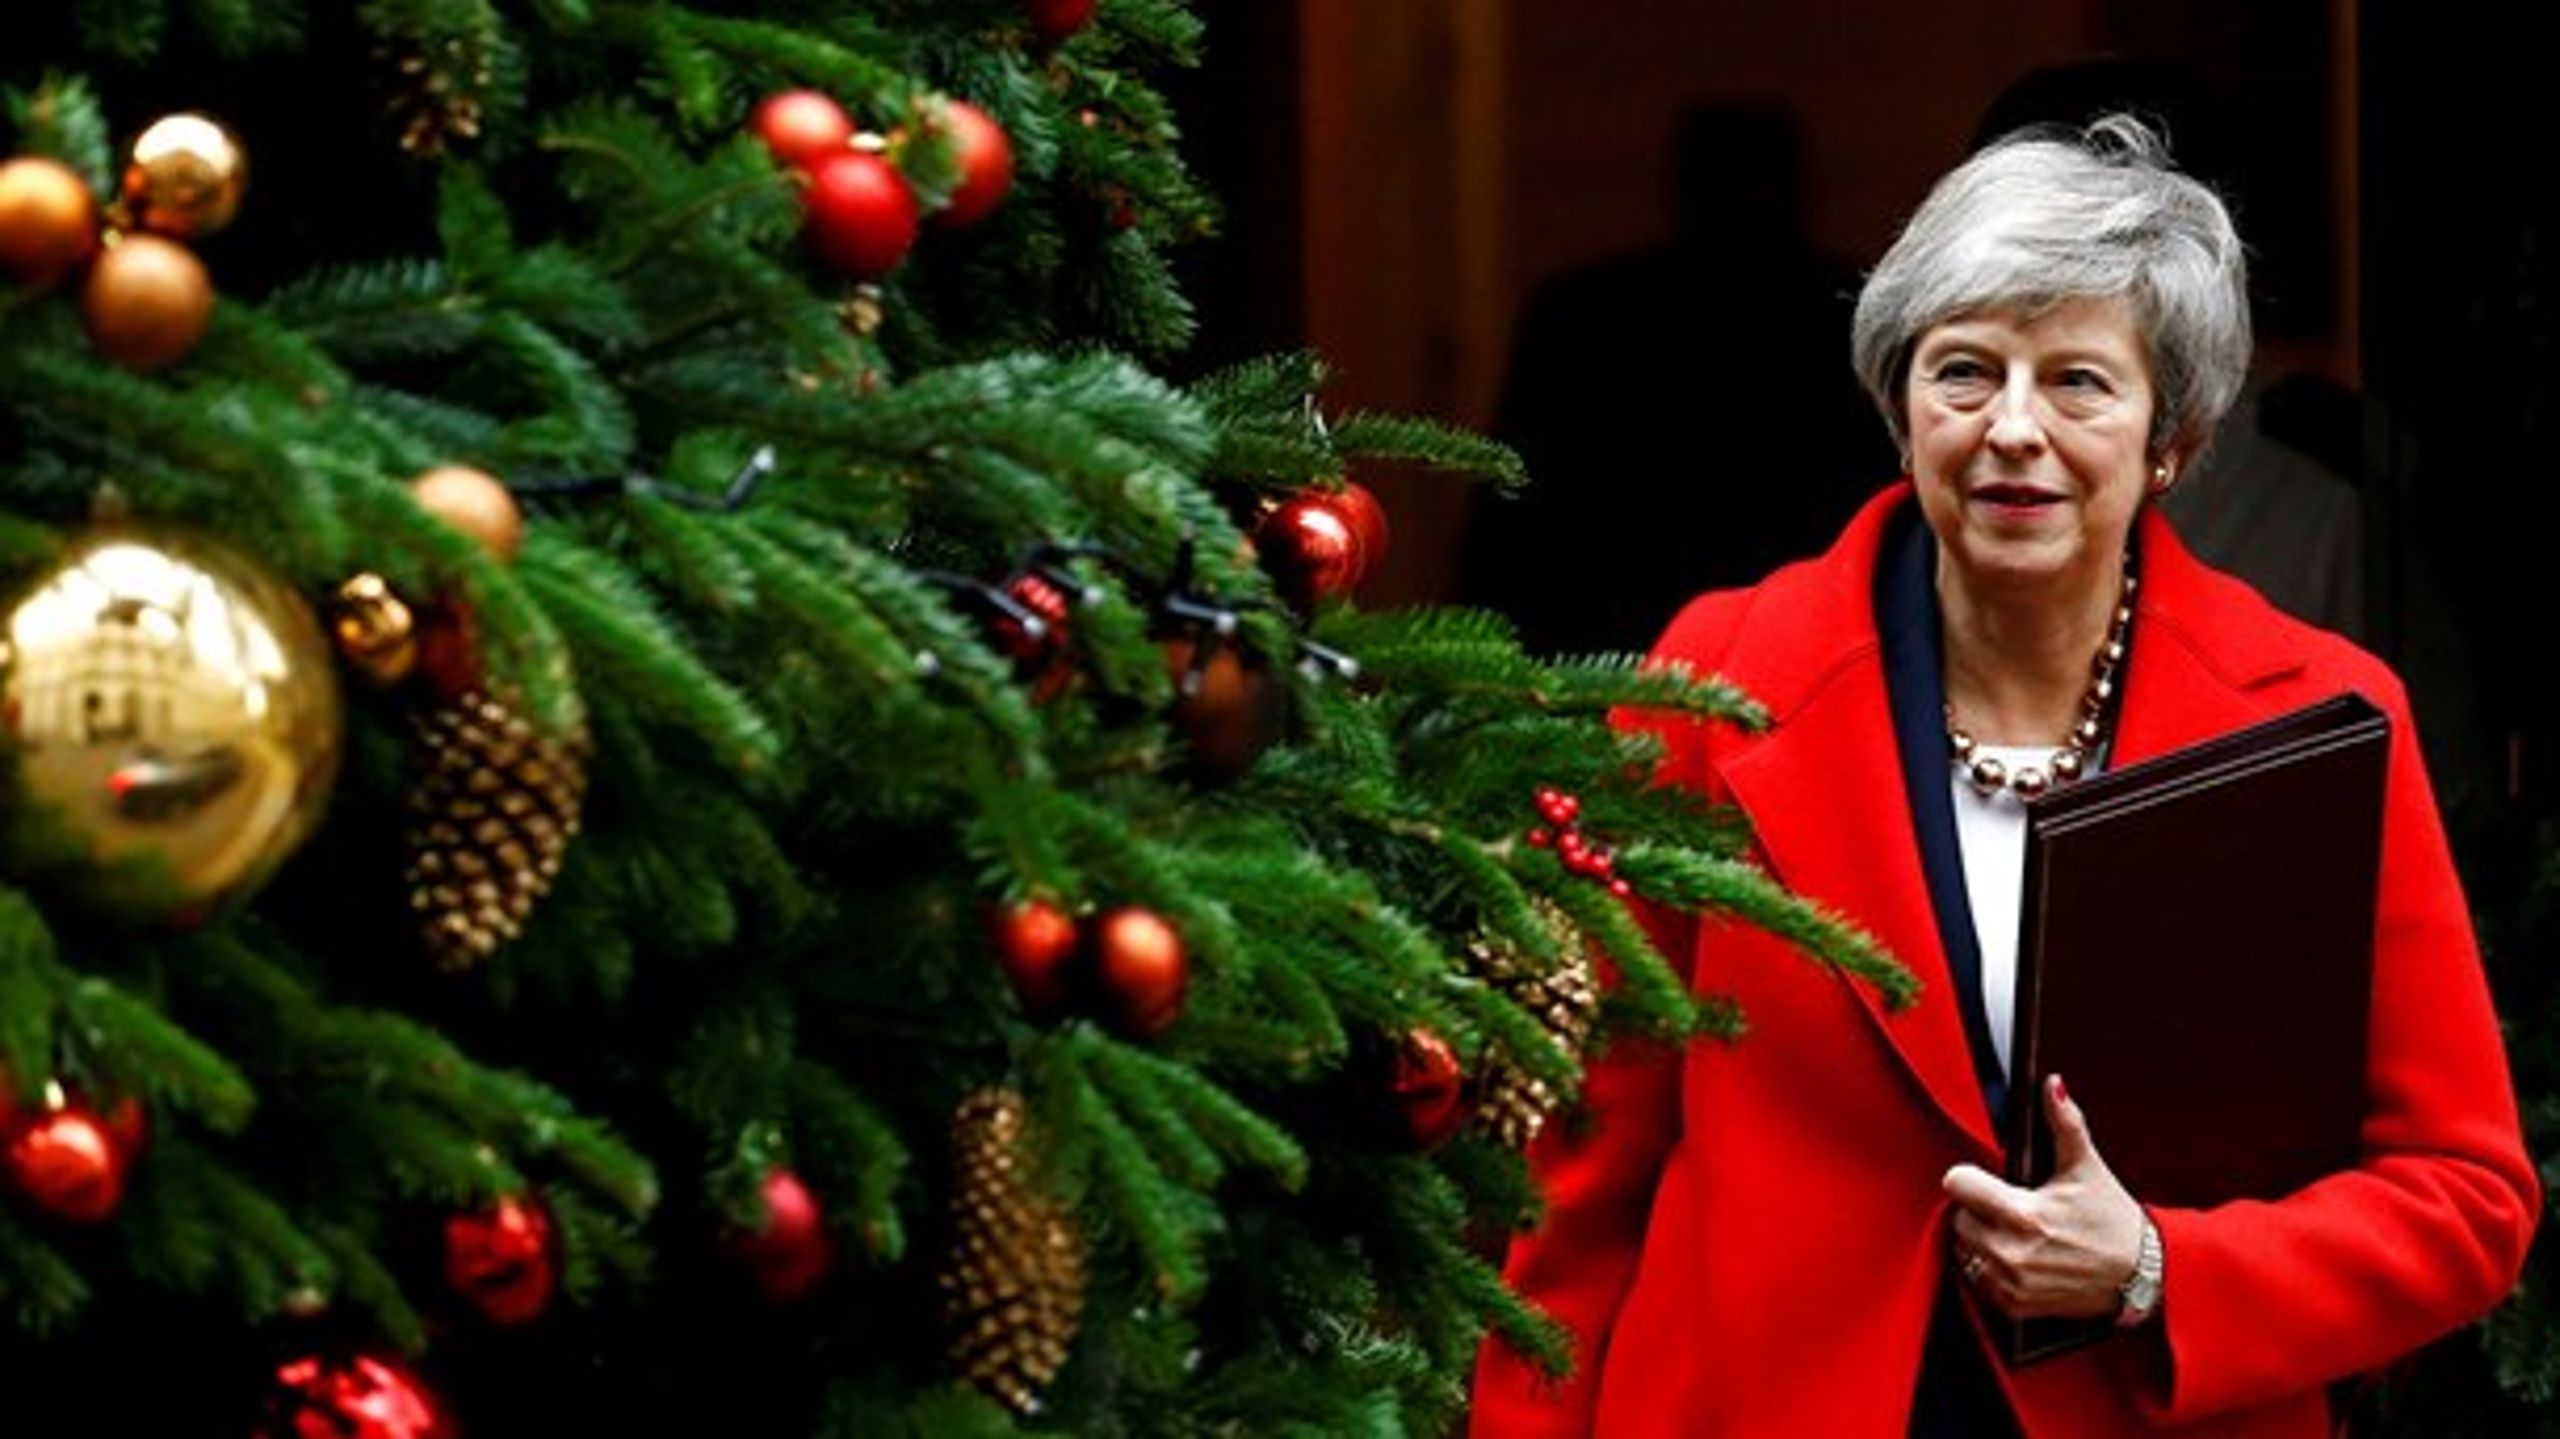 Juletræet er pyntet uden for Downing Street 10. Men der er meget langt til juleferien for premierminister Theresa May.